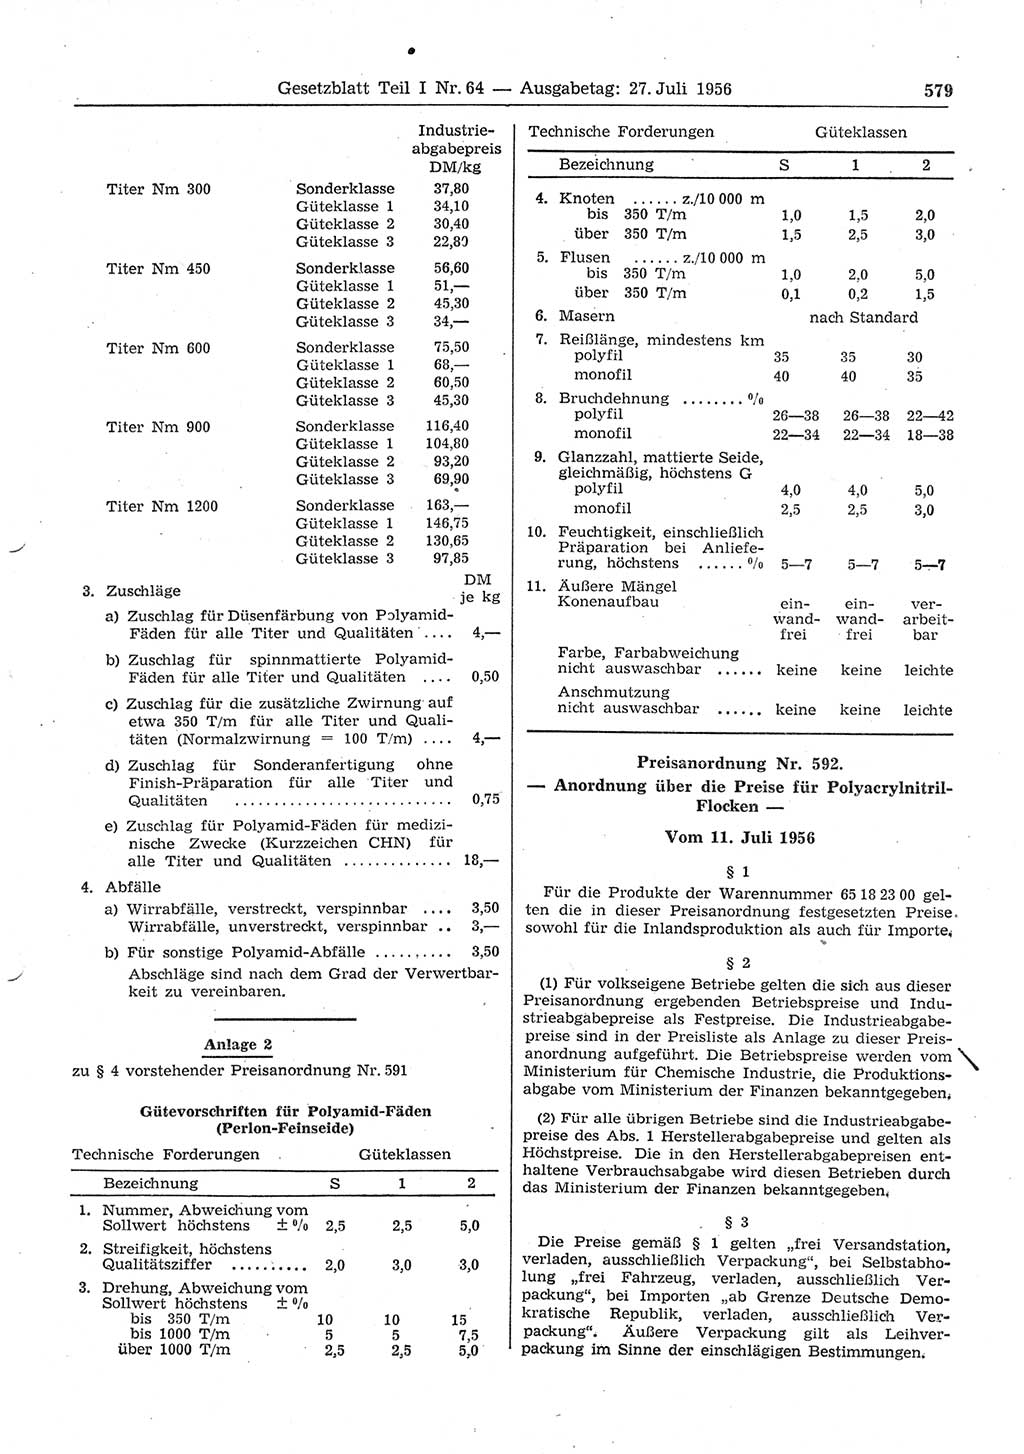 Gesetzblatt (GBl.) der Deutschen Demokratischen Republik (DDR) Teil Ⅰ 1956, Seite 579 (GBl. DDR Ⅰ 1956, S. 579)